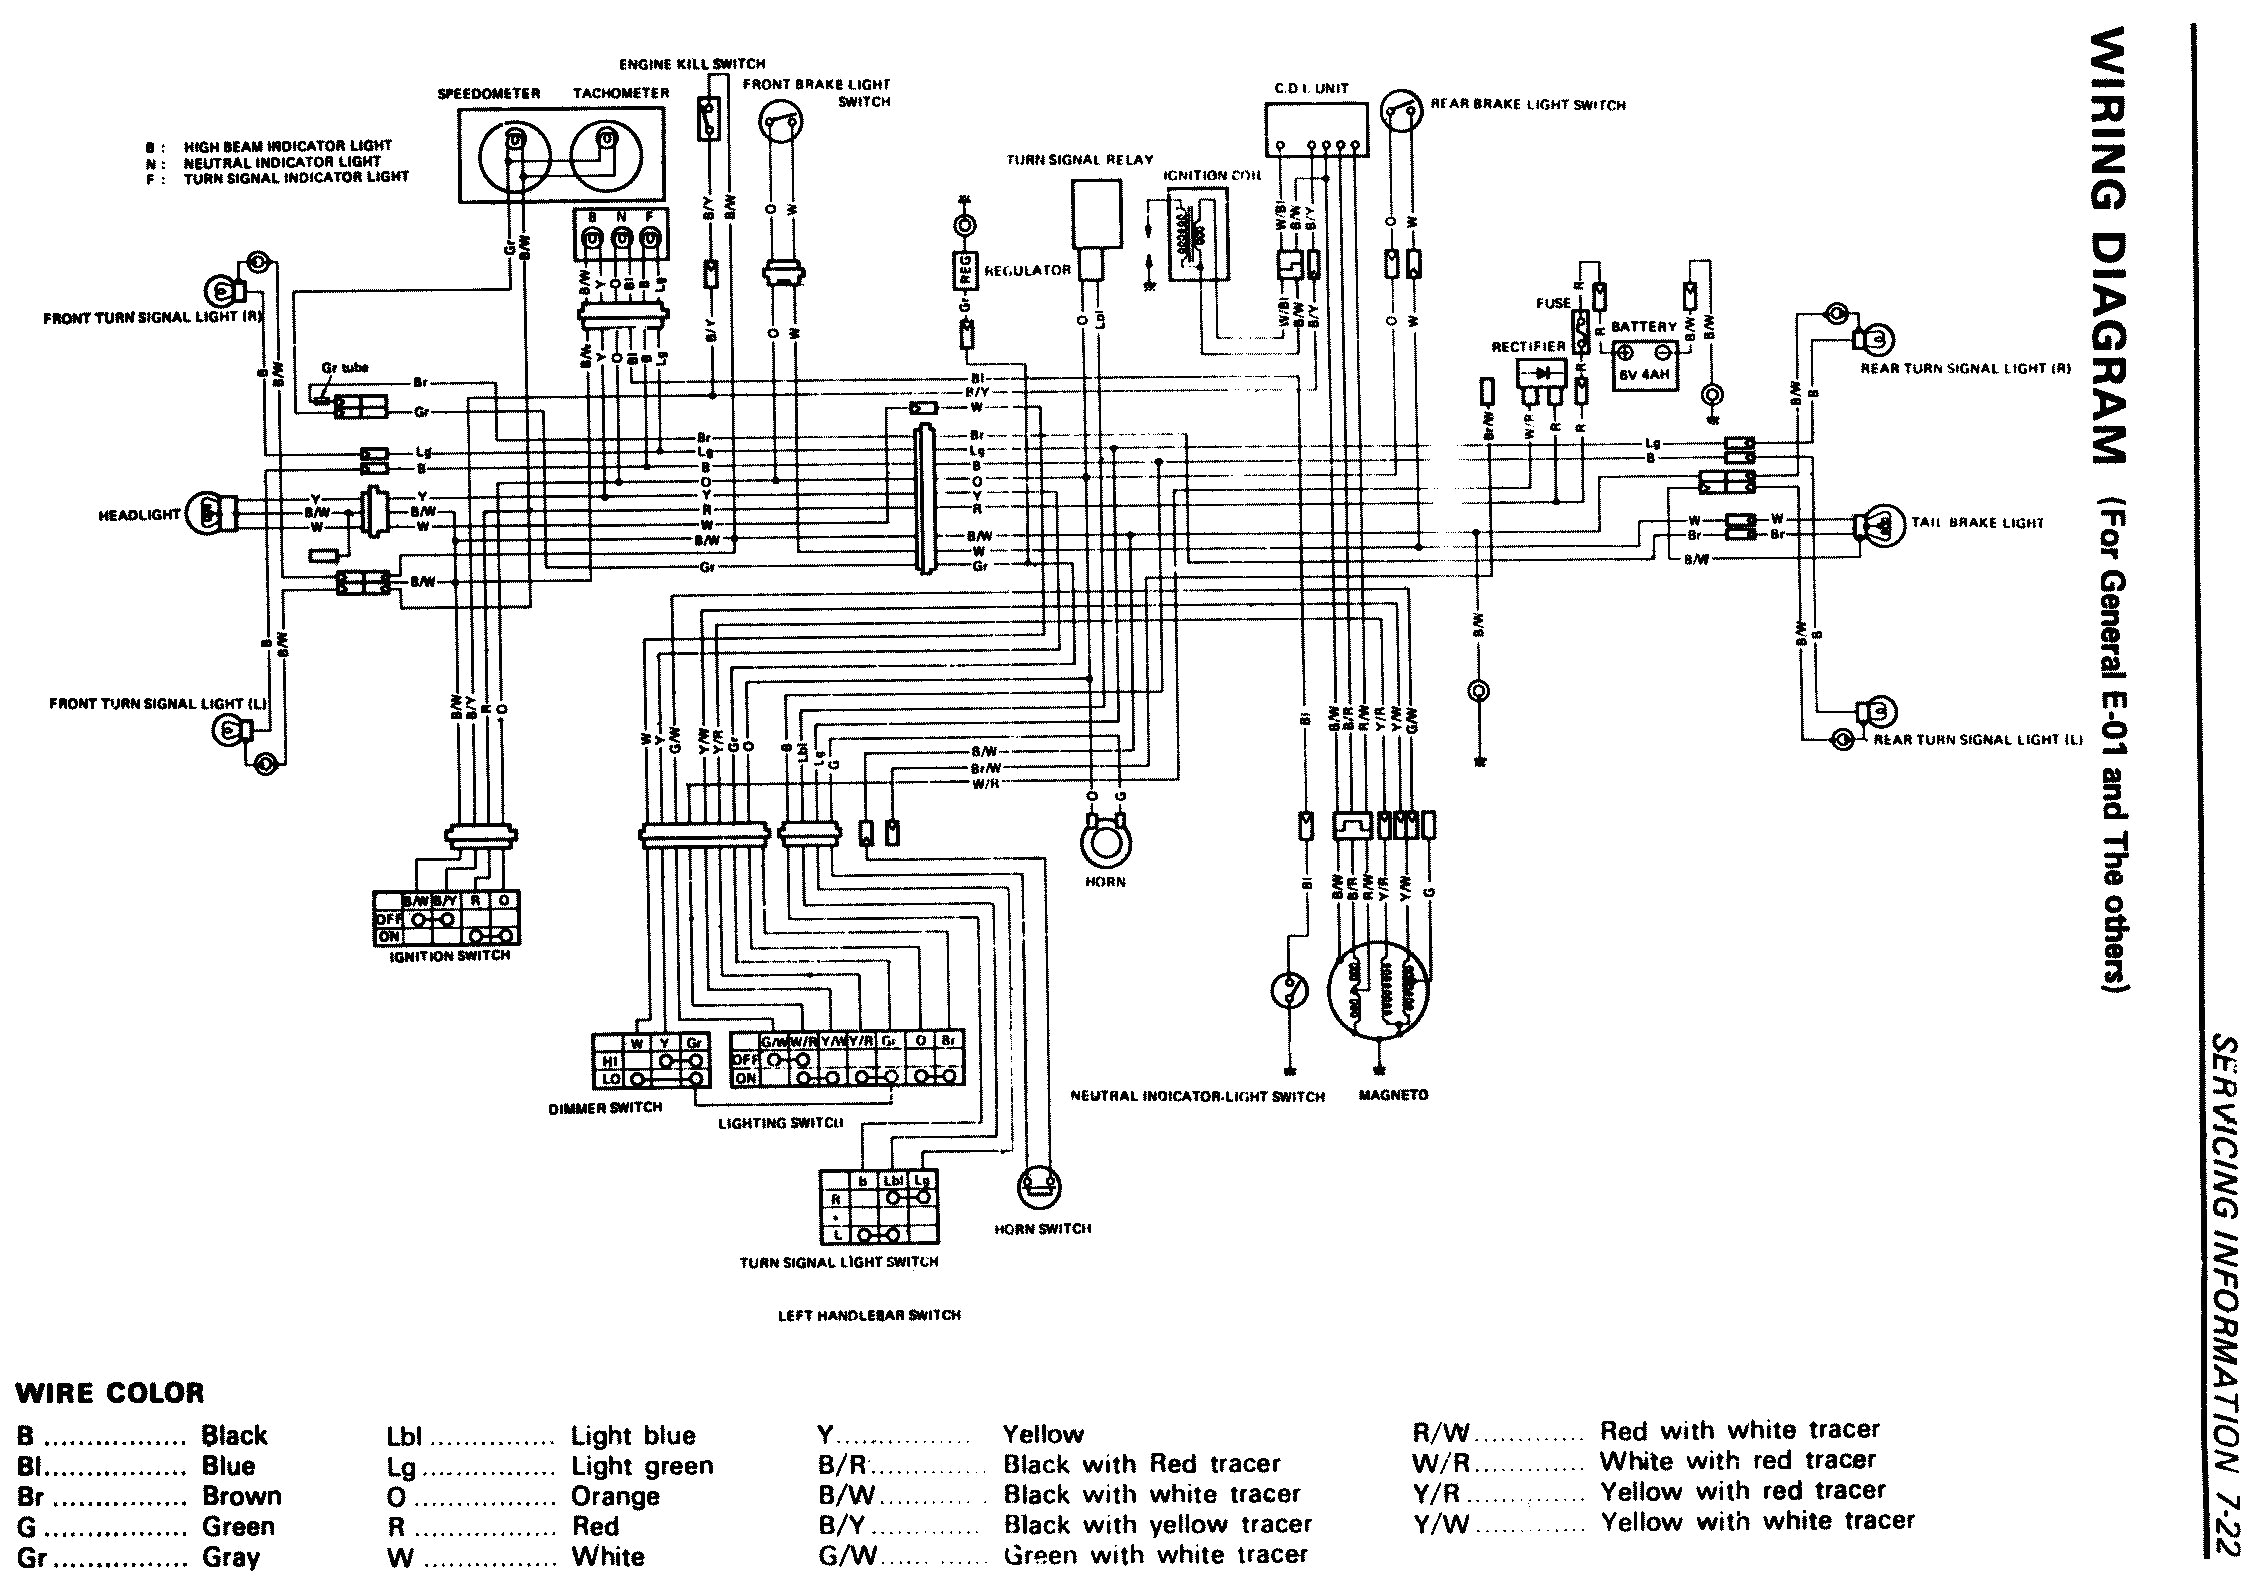 suzuki gt250 wiring diagram schema diagram databasesuzuki gt250 wiring diagram wiring diagram diagram of suzuki motorcycle